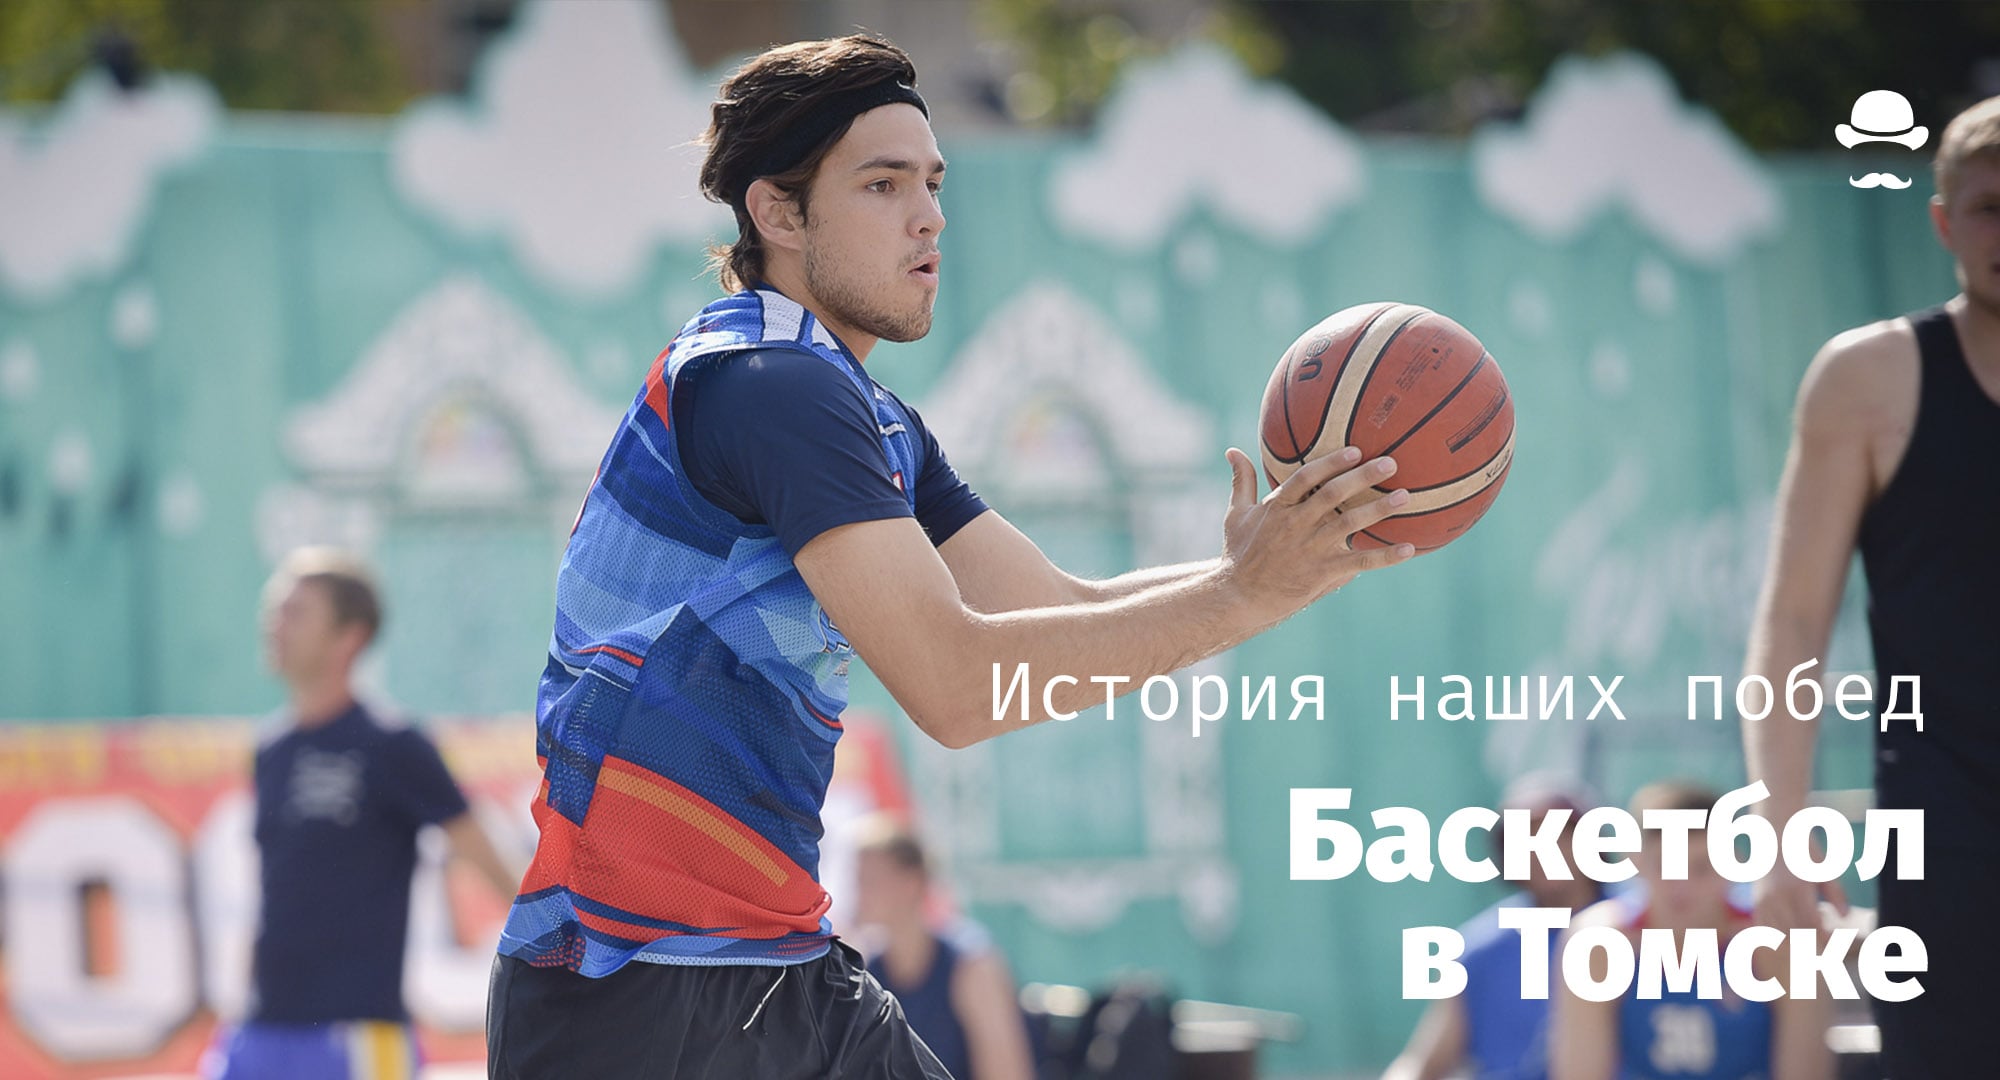 История наших побед, Спорт, Спорт в Томске, История наших побед. Баскетбол: спорт не только для великанов